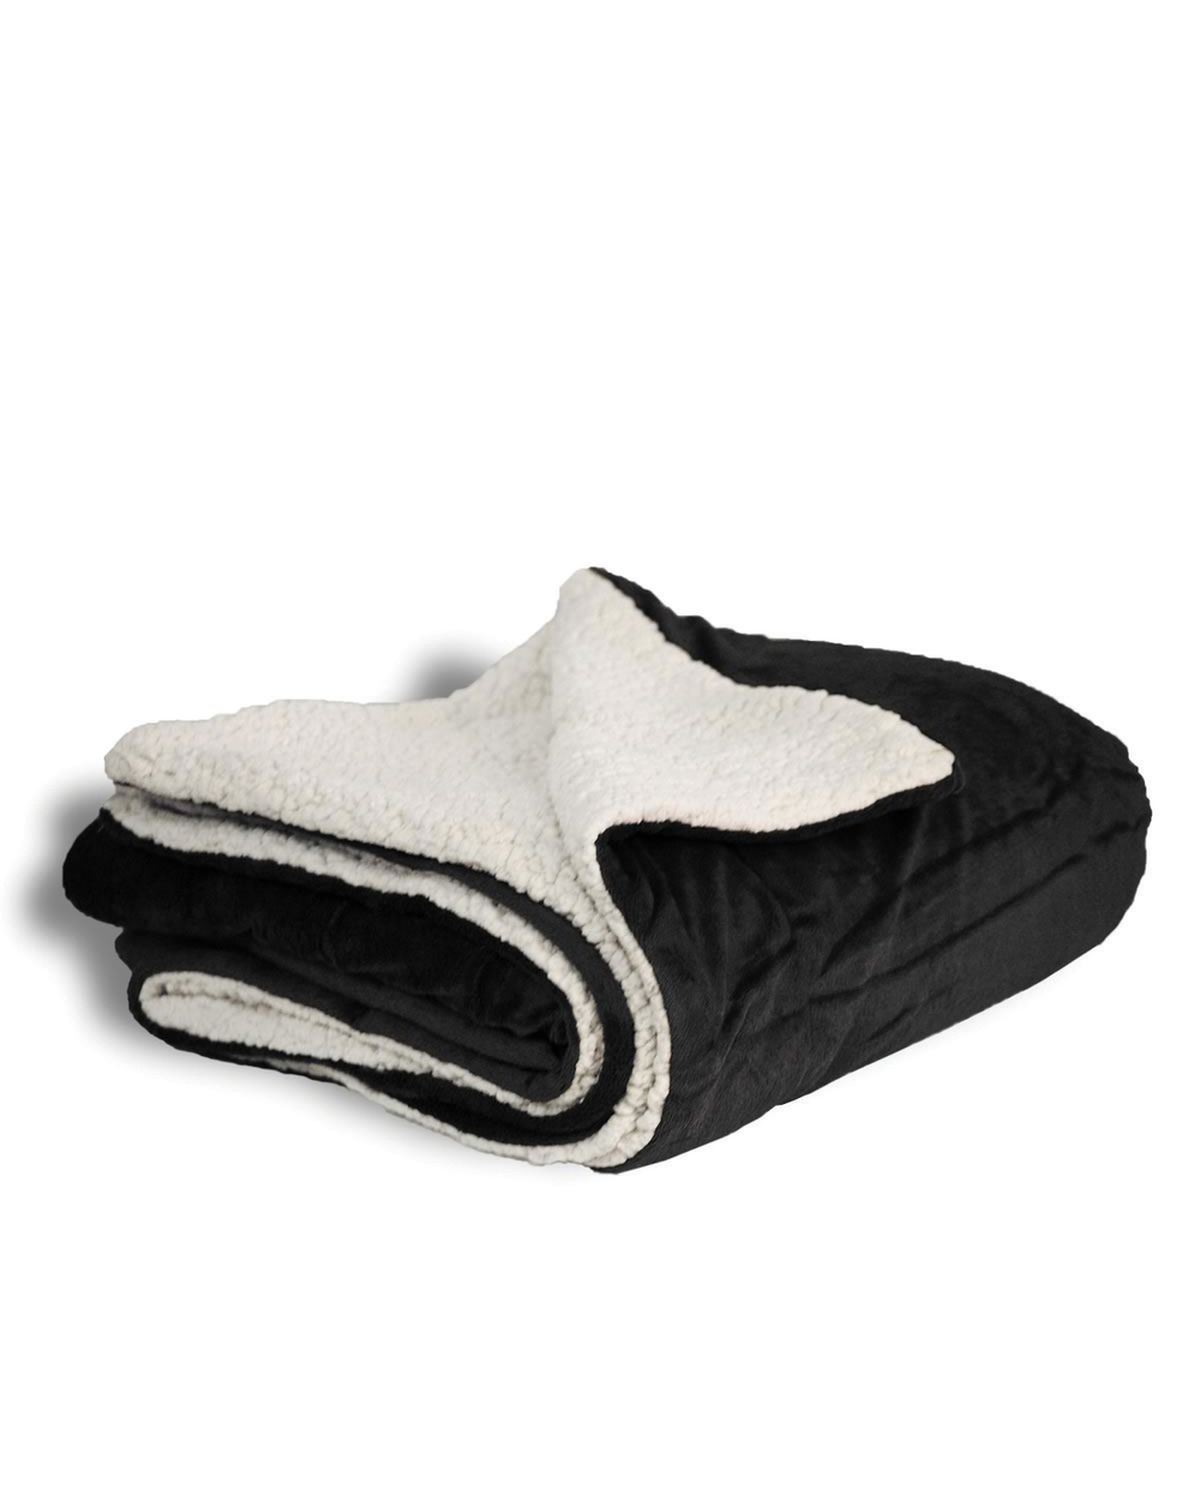 'Alpine Fleece 8712 Micro Mink Sherpa Blanket'